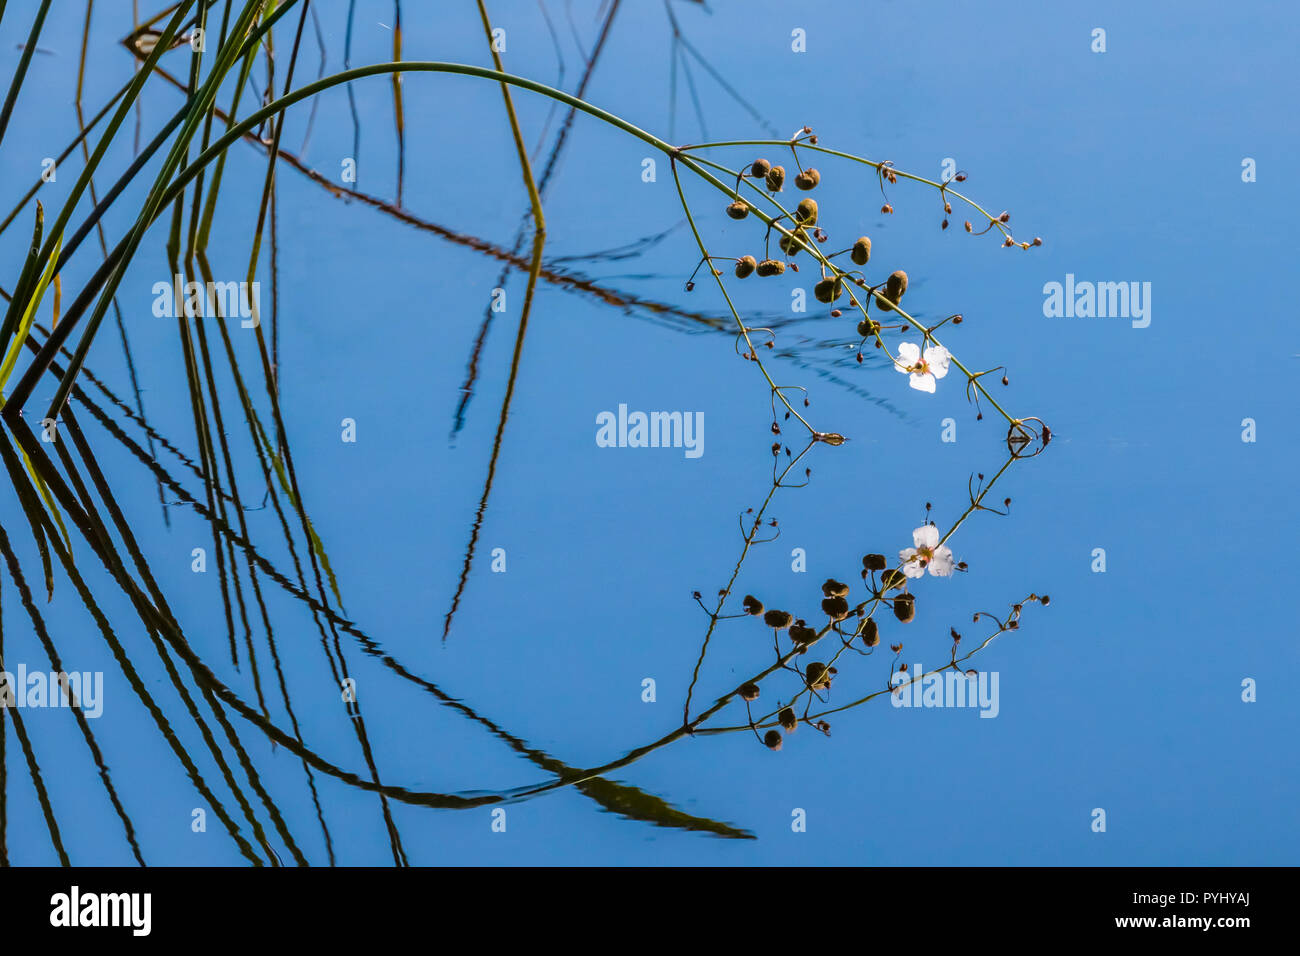 Petite fleur blanche se reflétant dans l'eau calme d'un bleu profond de la création d'une image miroir dans Babcock-Webb Piunte dans la zone de gestion de la faune de la Floride dans l'Gorda Banque D'Images